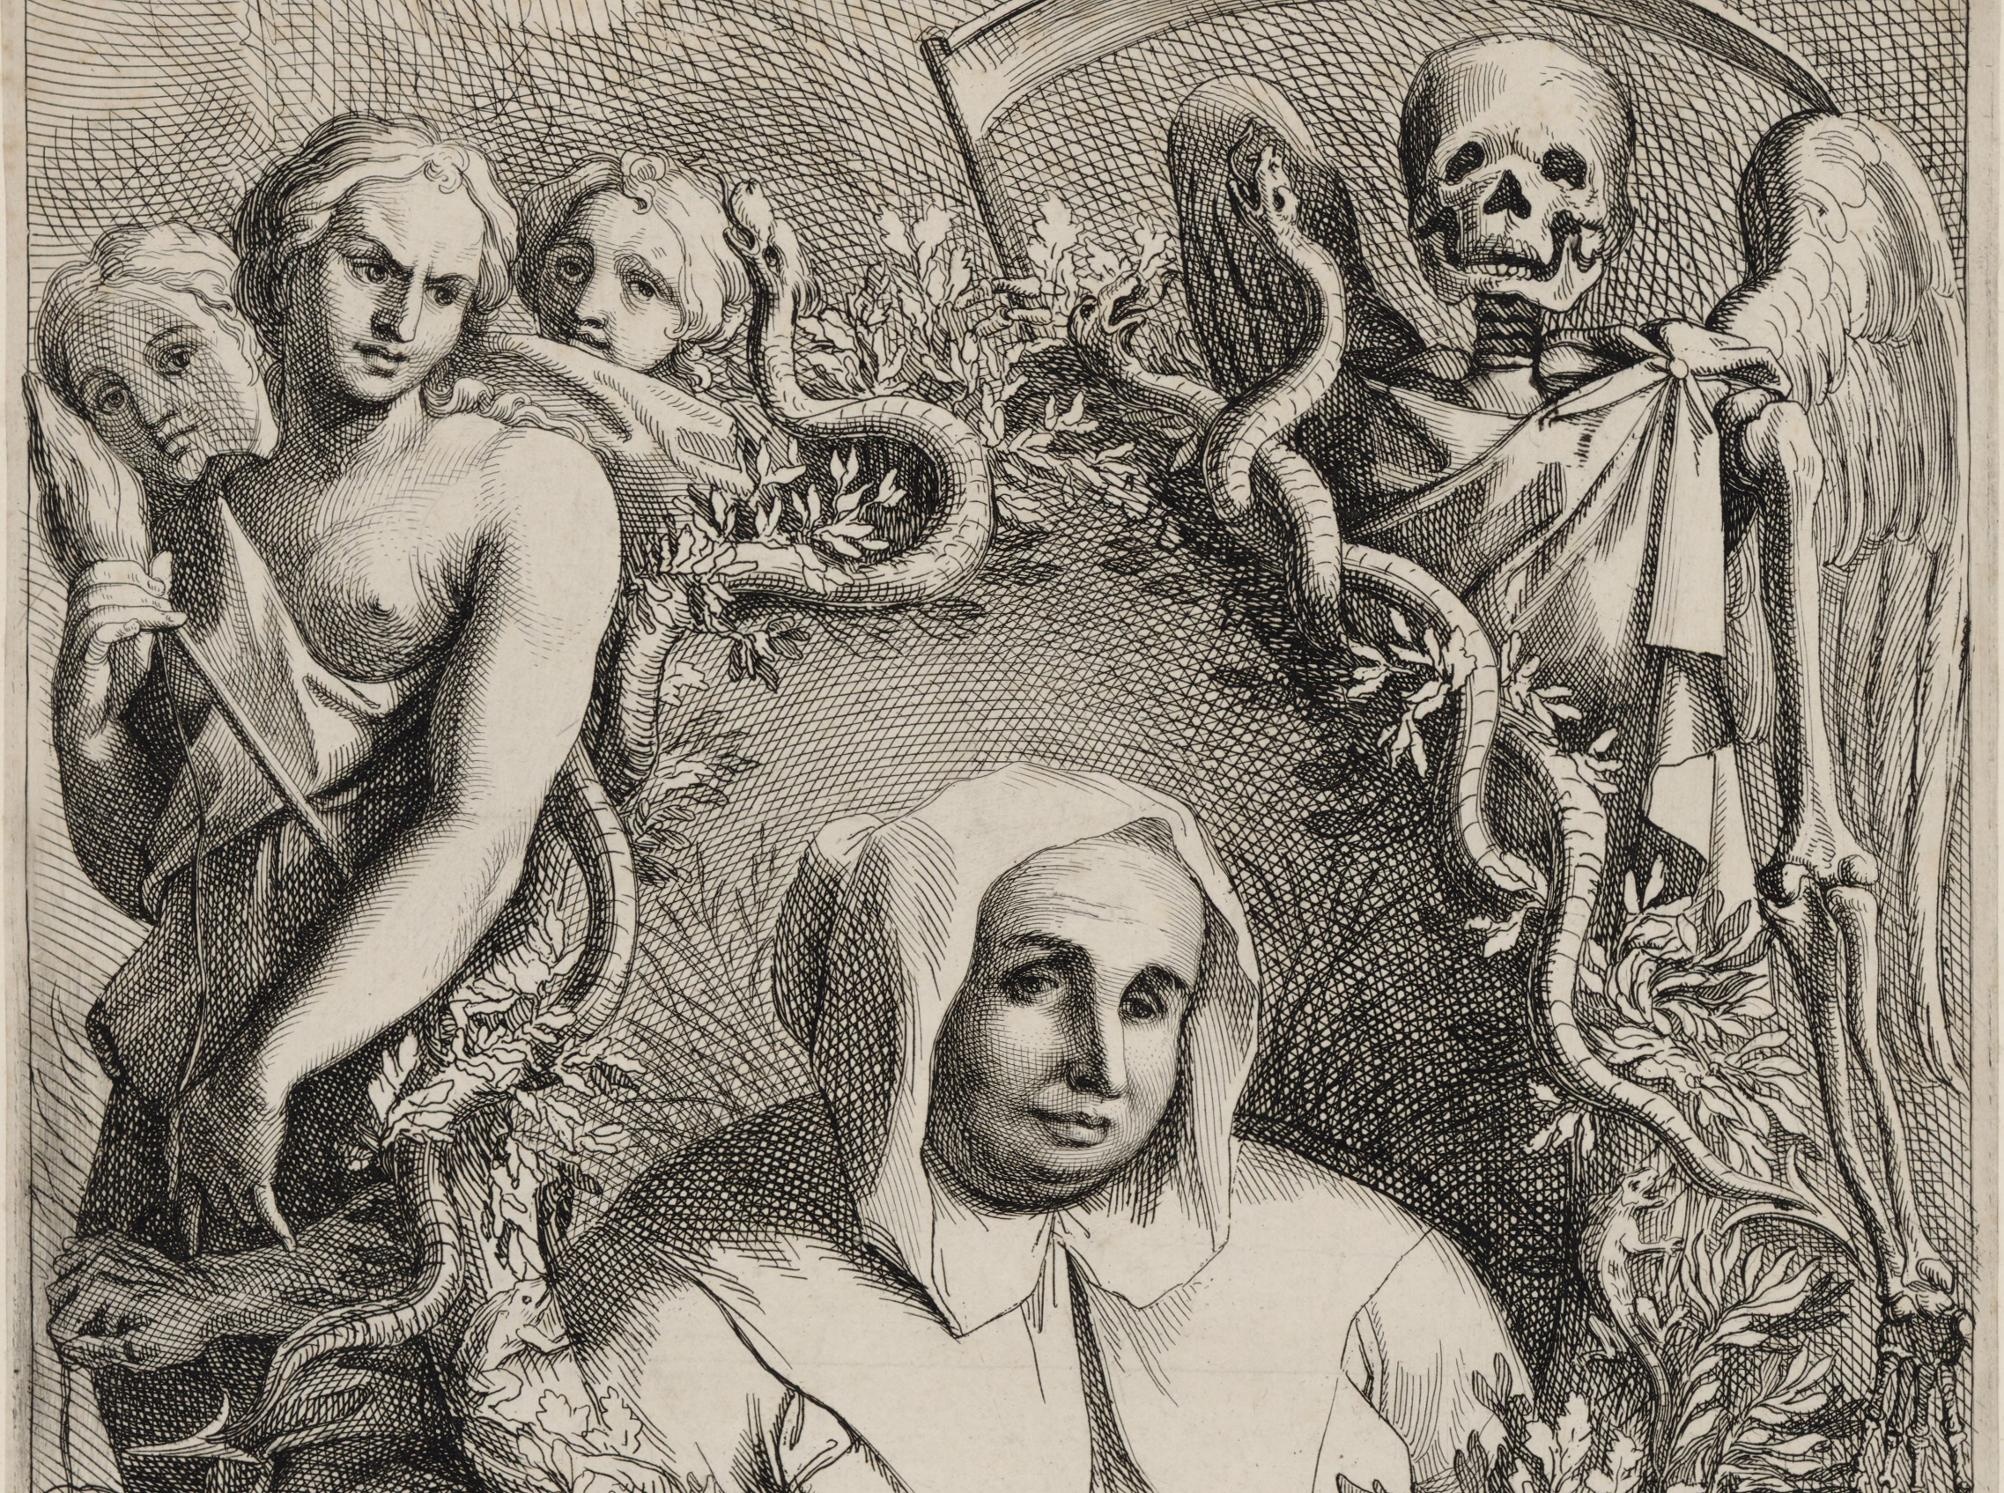 Zeichnung von einer Frau mit weißer Kapuze und Mantel, rundherum Schlangen, ein Drache und mystische Menschenfiguren sowie ein Skelett mit Flügeln und Sense.   © Wikimedia